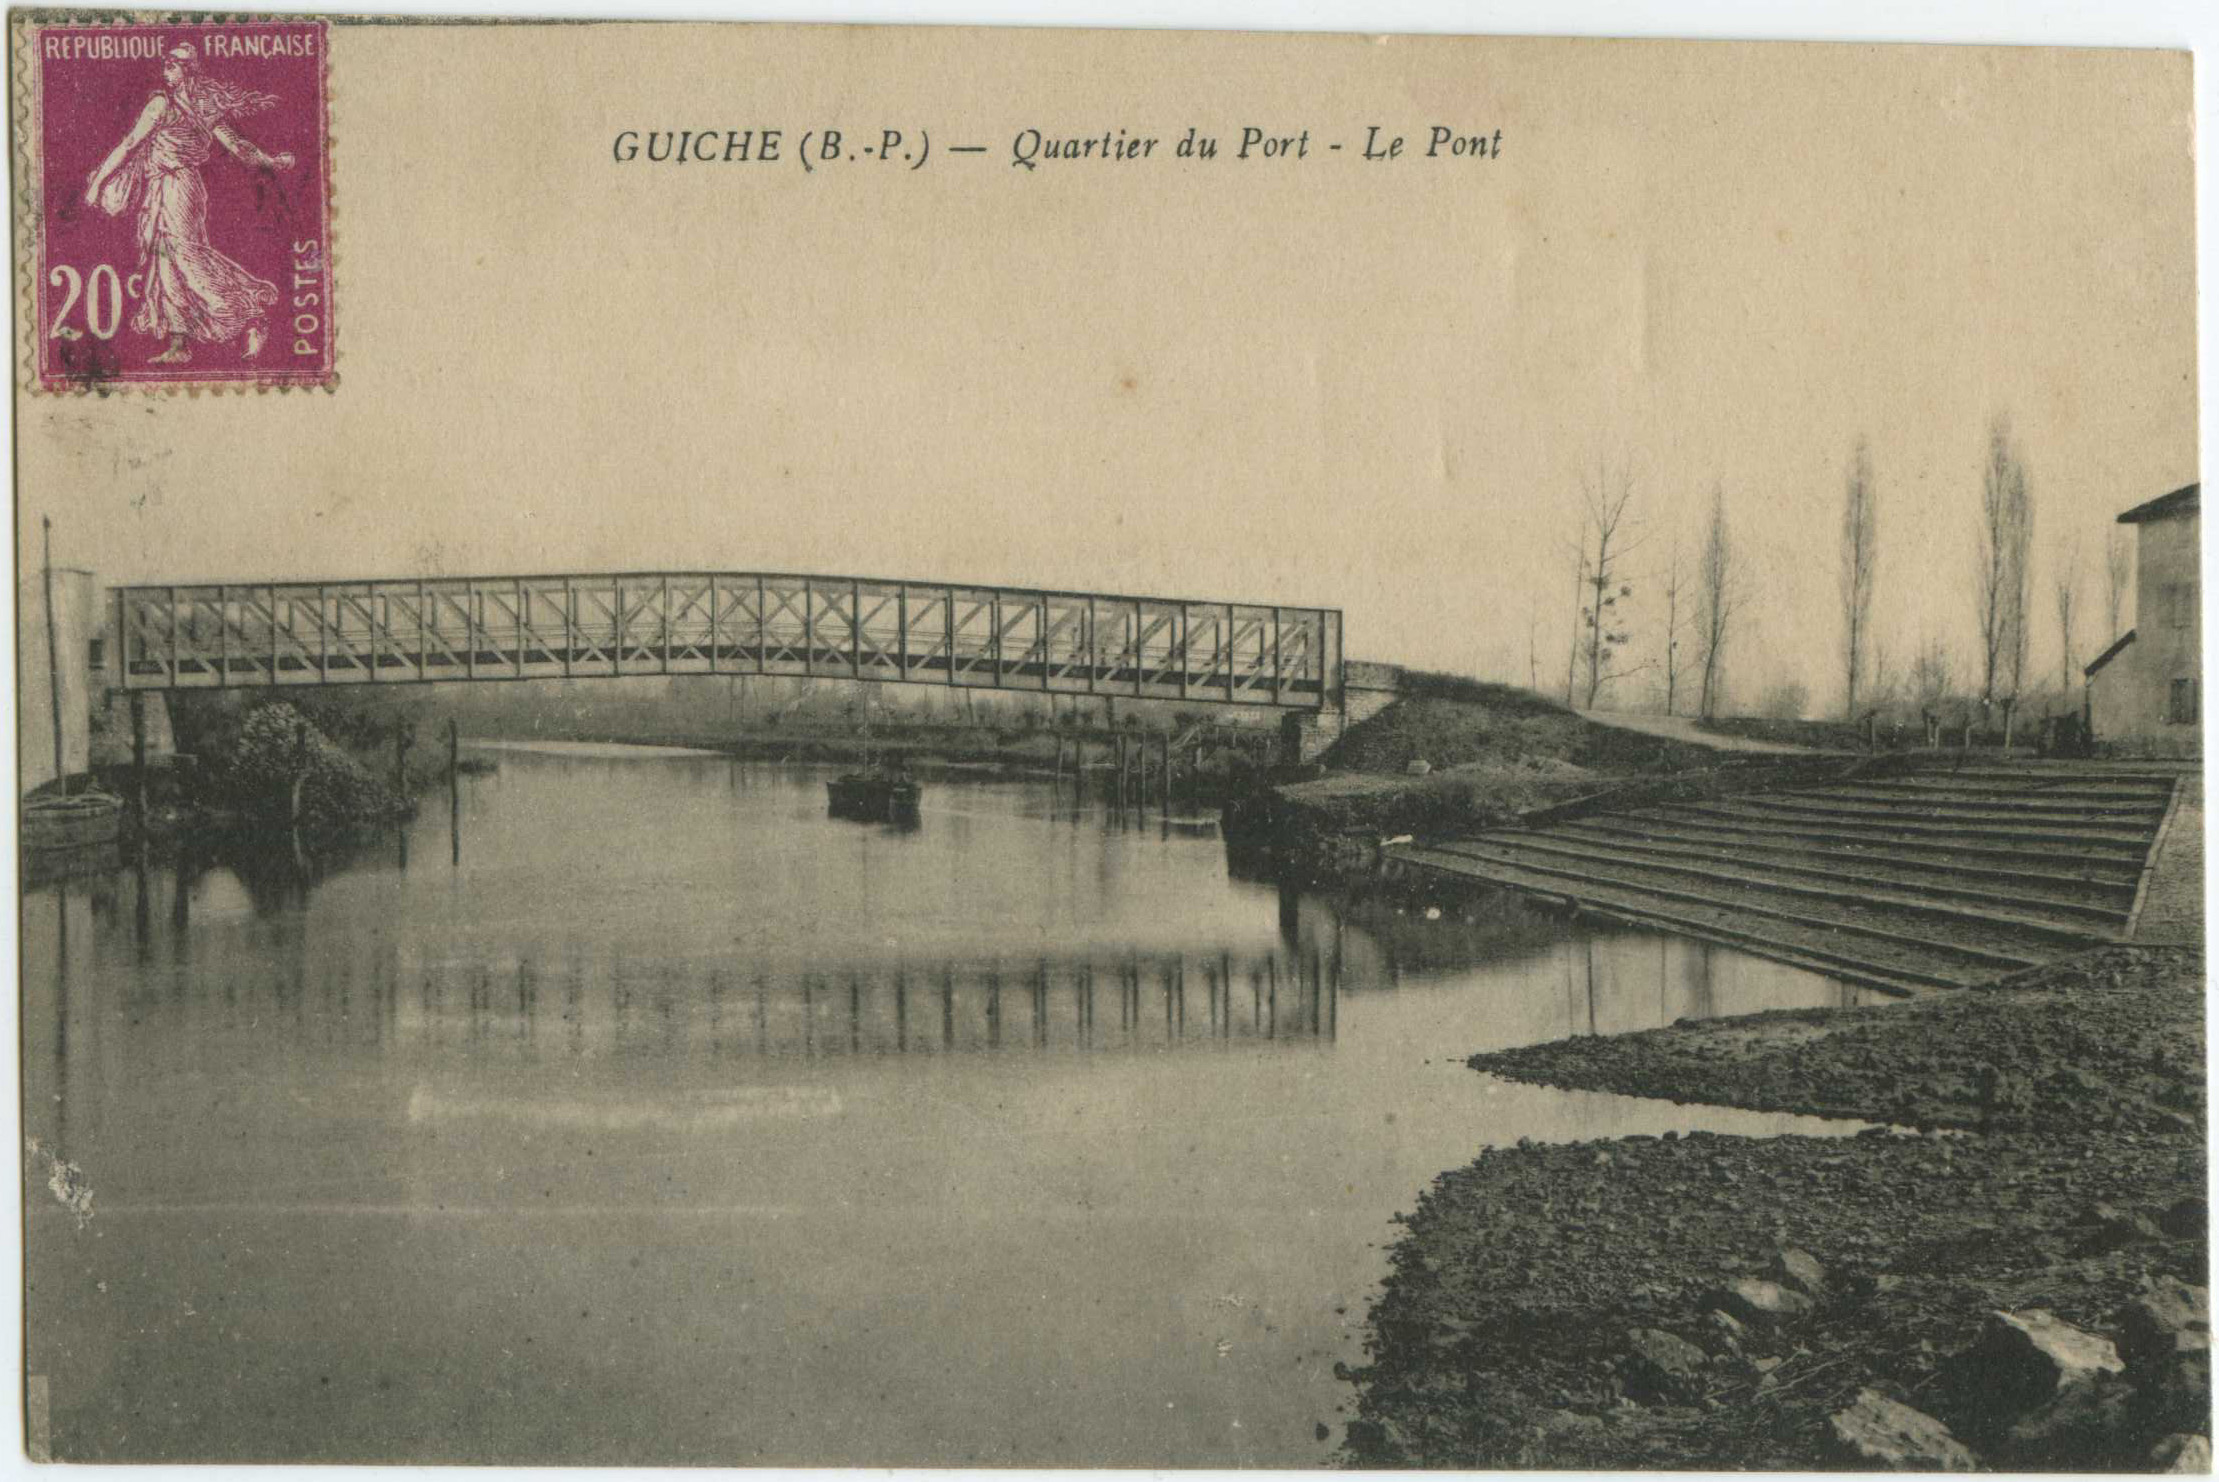 Guiche - Quartier du Port - Le Pont